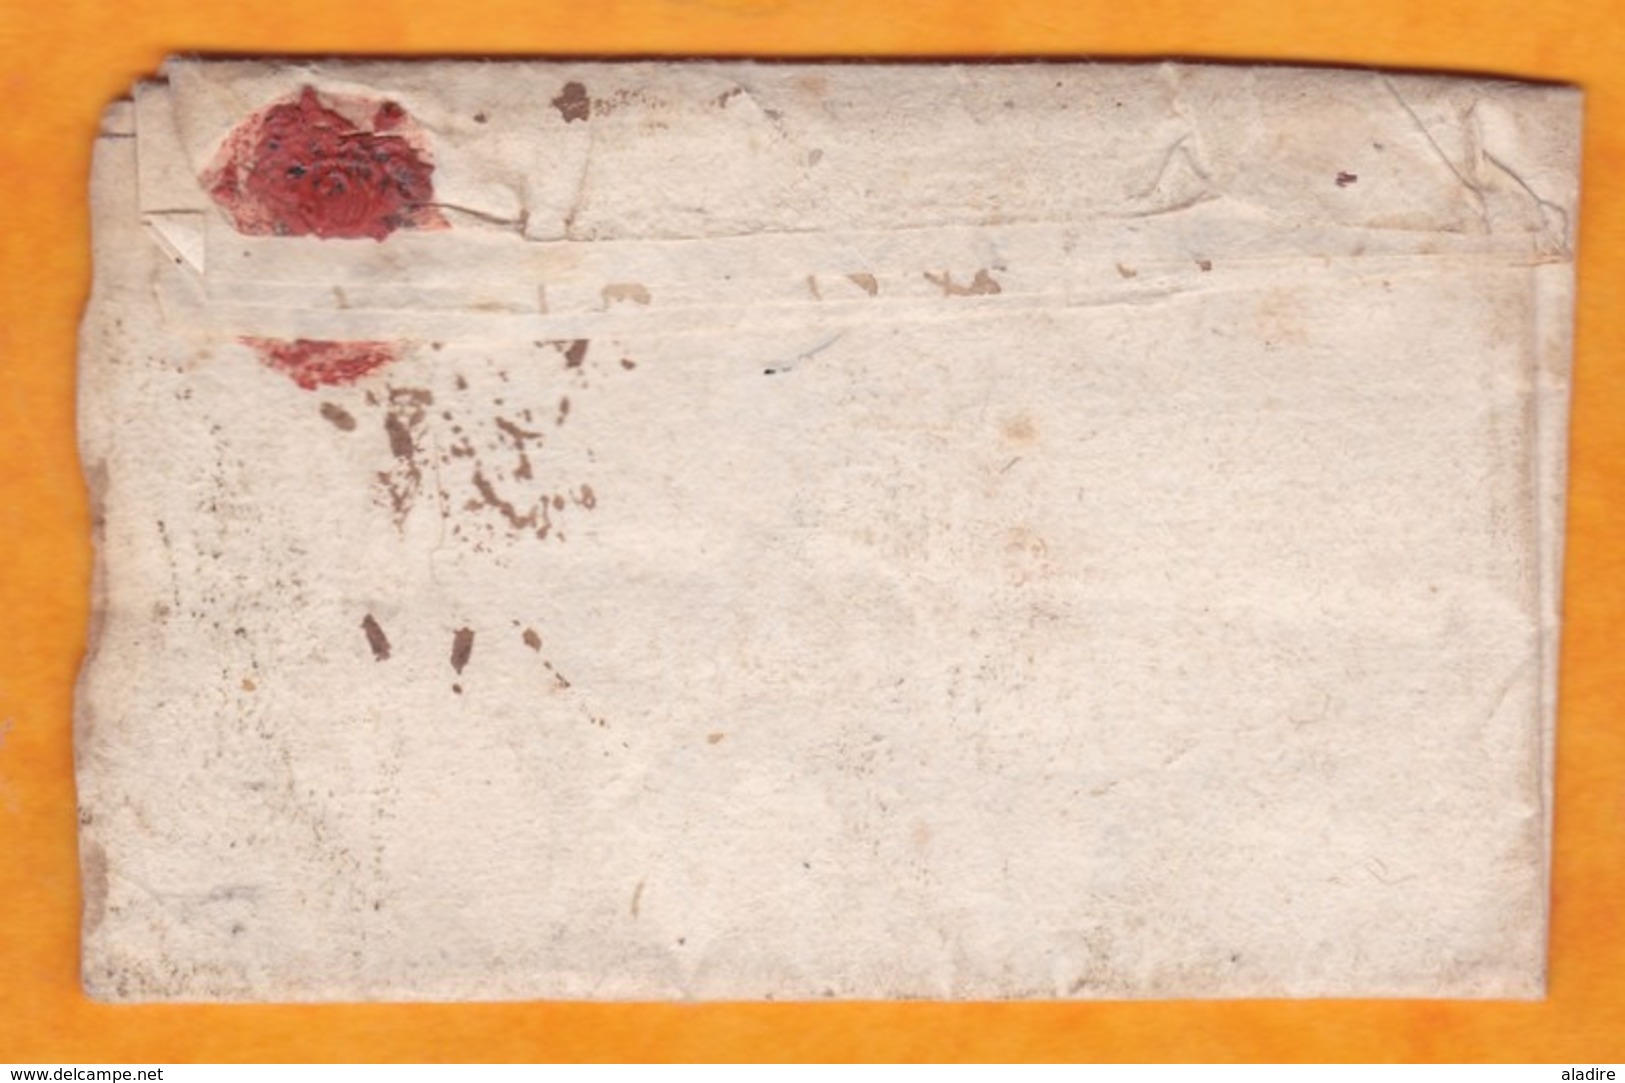 1723 - Marque Postale Manuscripte De GAP Sur Lettre Pliée Avec Corresp De Tallard, Hautes Alpes Vers Paris - 1701-1800: Precursores XVIII